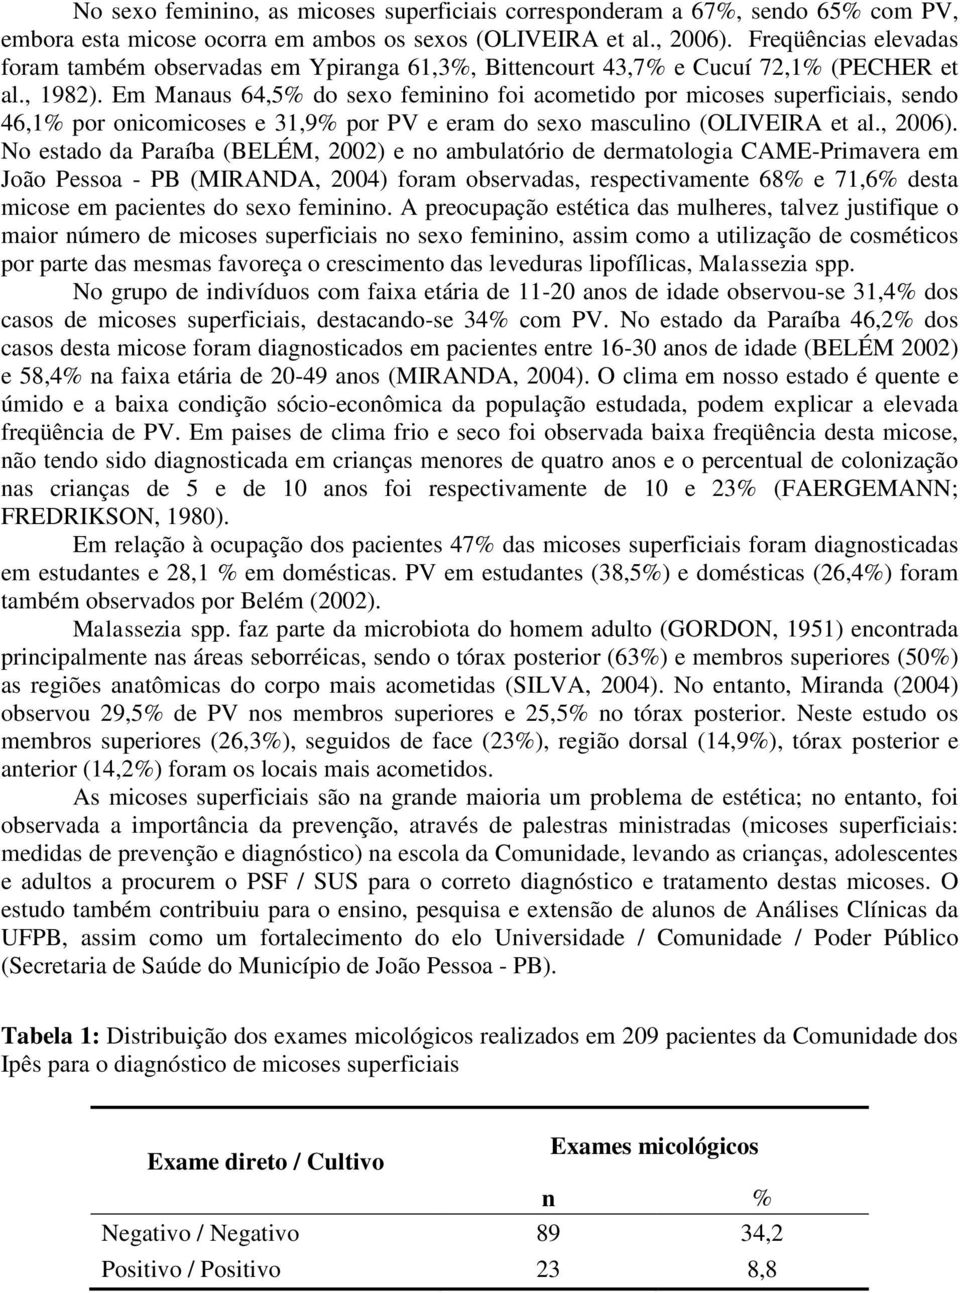 Em Manaus 64,5% do sexo feminino foi acometido por micoses superficiais, sendo 46,1% por onicomicoses e 31,9% por PV e eram do sexo masculino (OLIVEIRA et al., 2006).